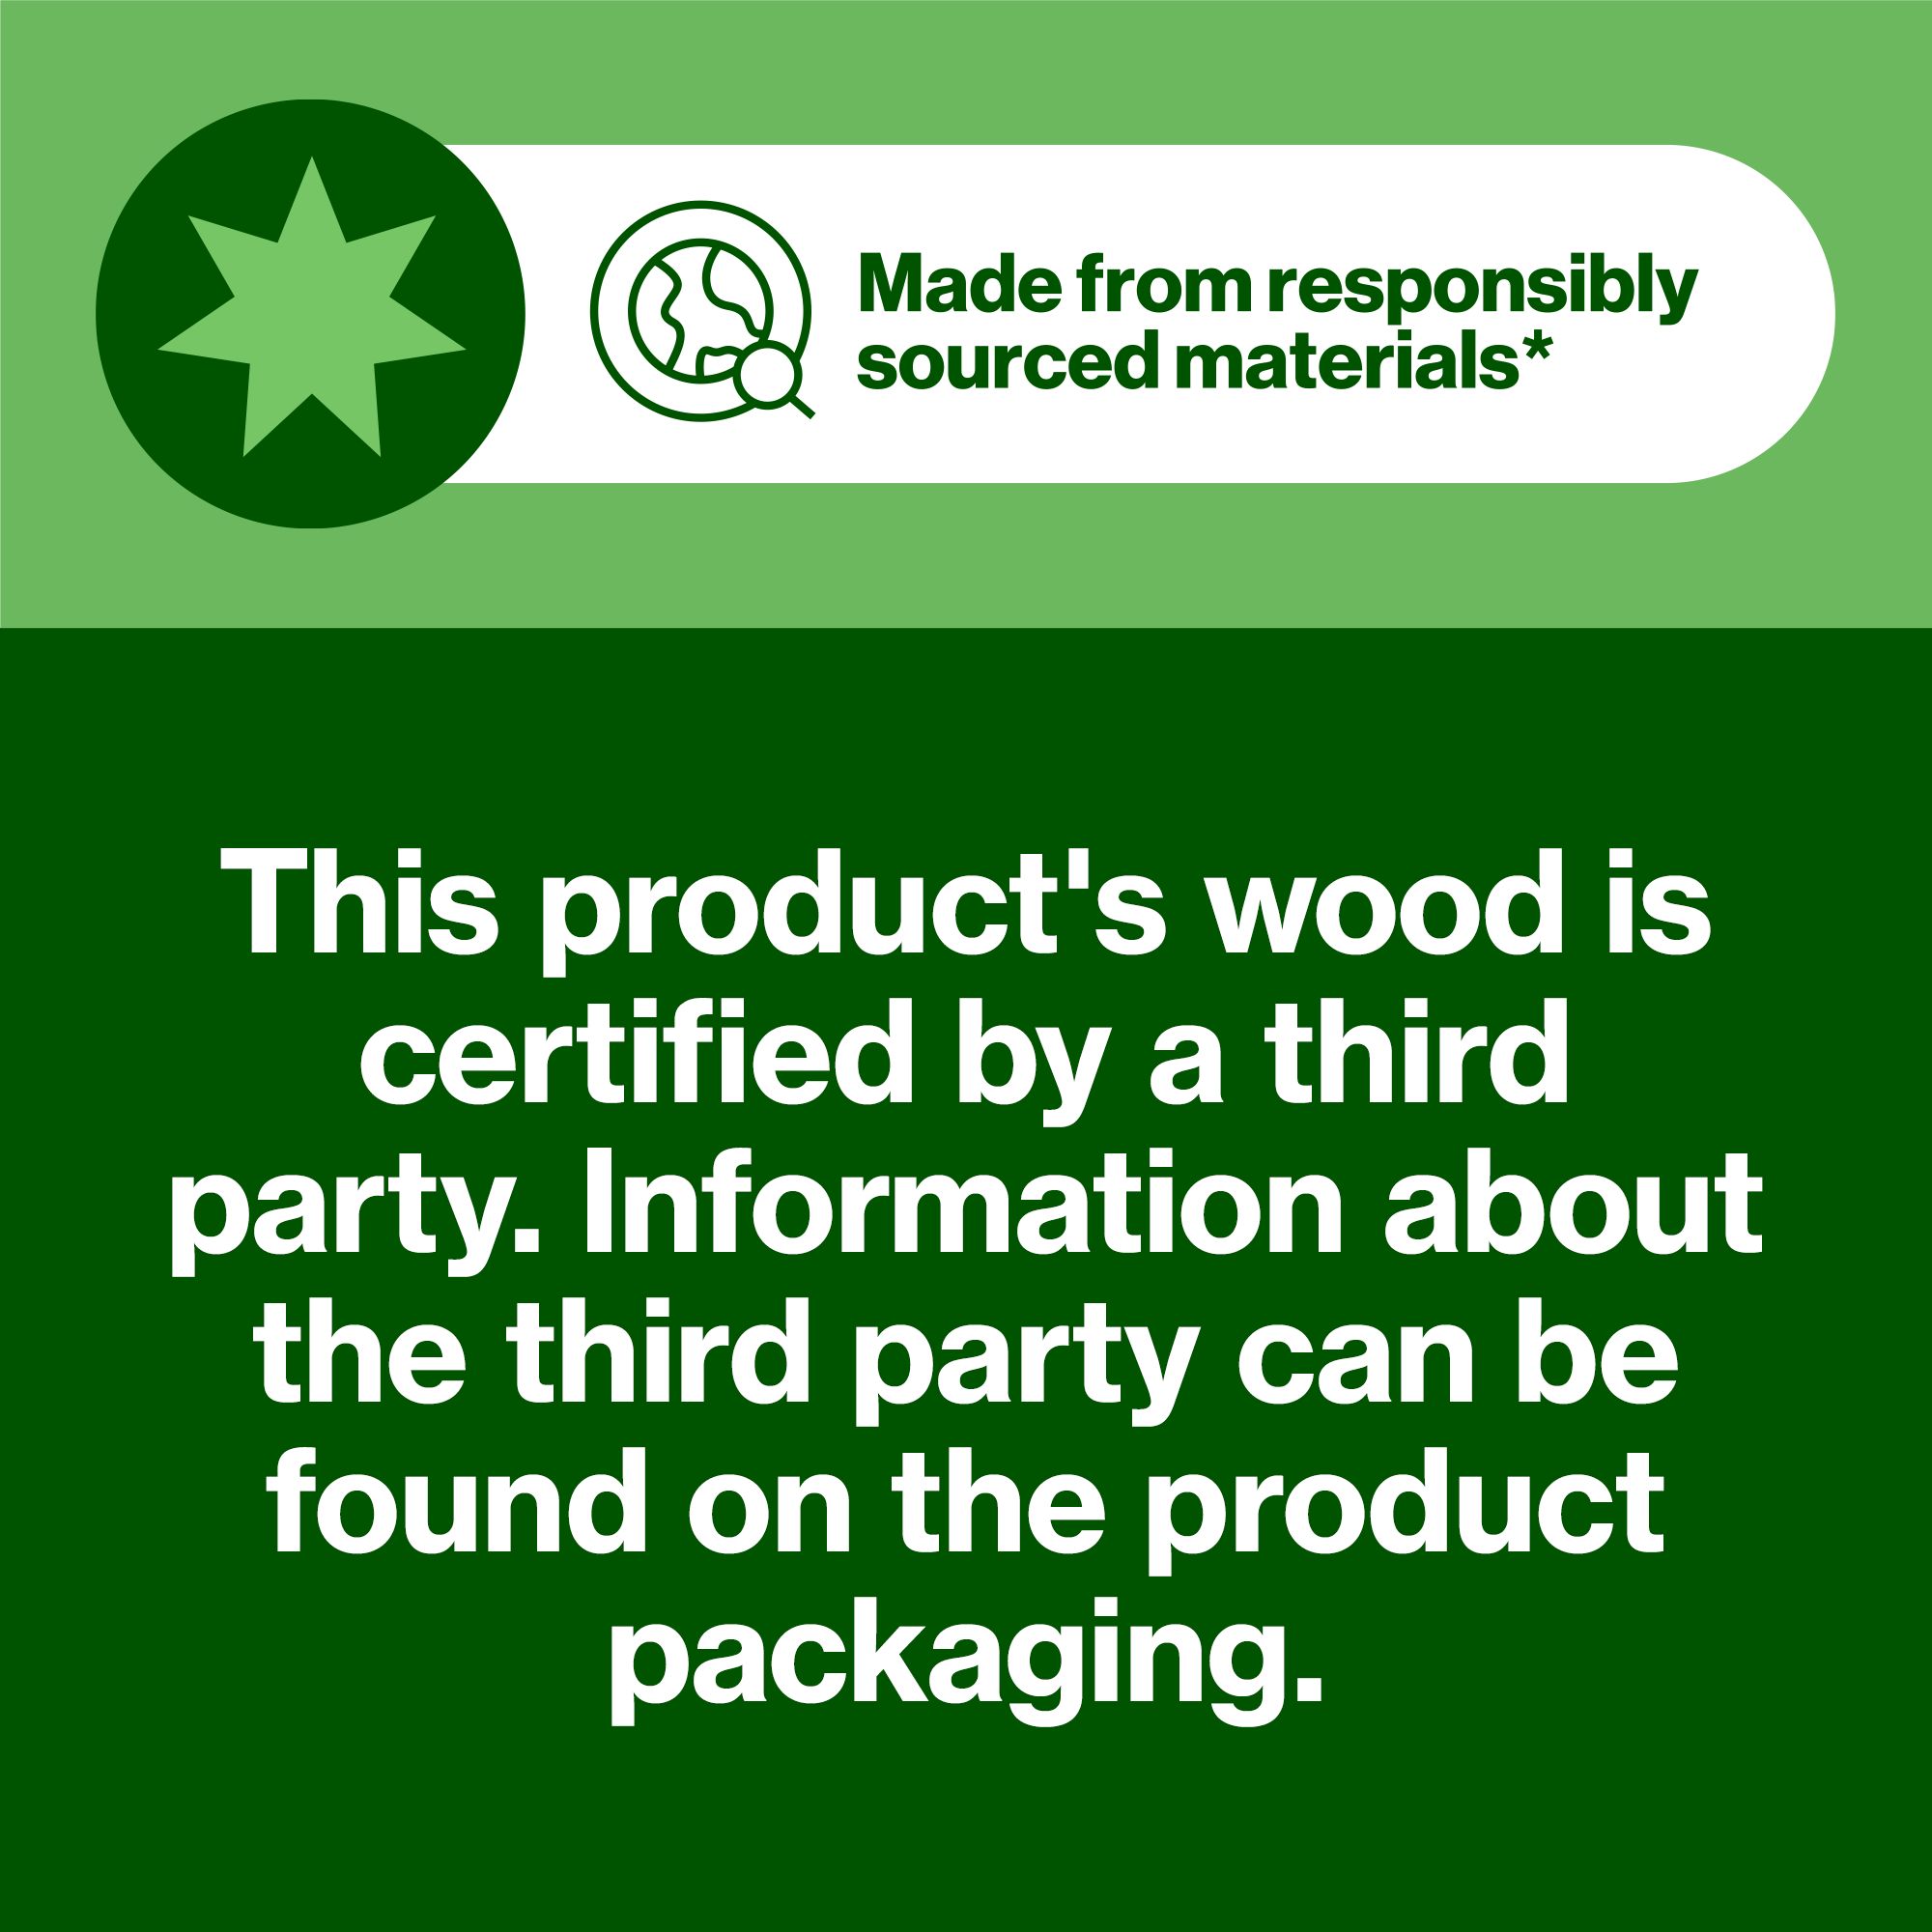 Hardwood Plywood (L)2.44m (W)1.22m (T)12mm